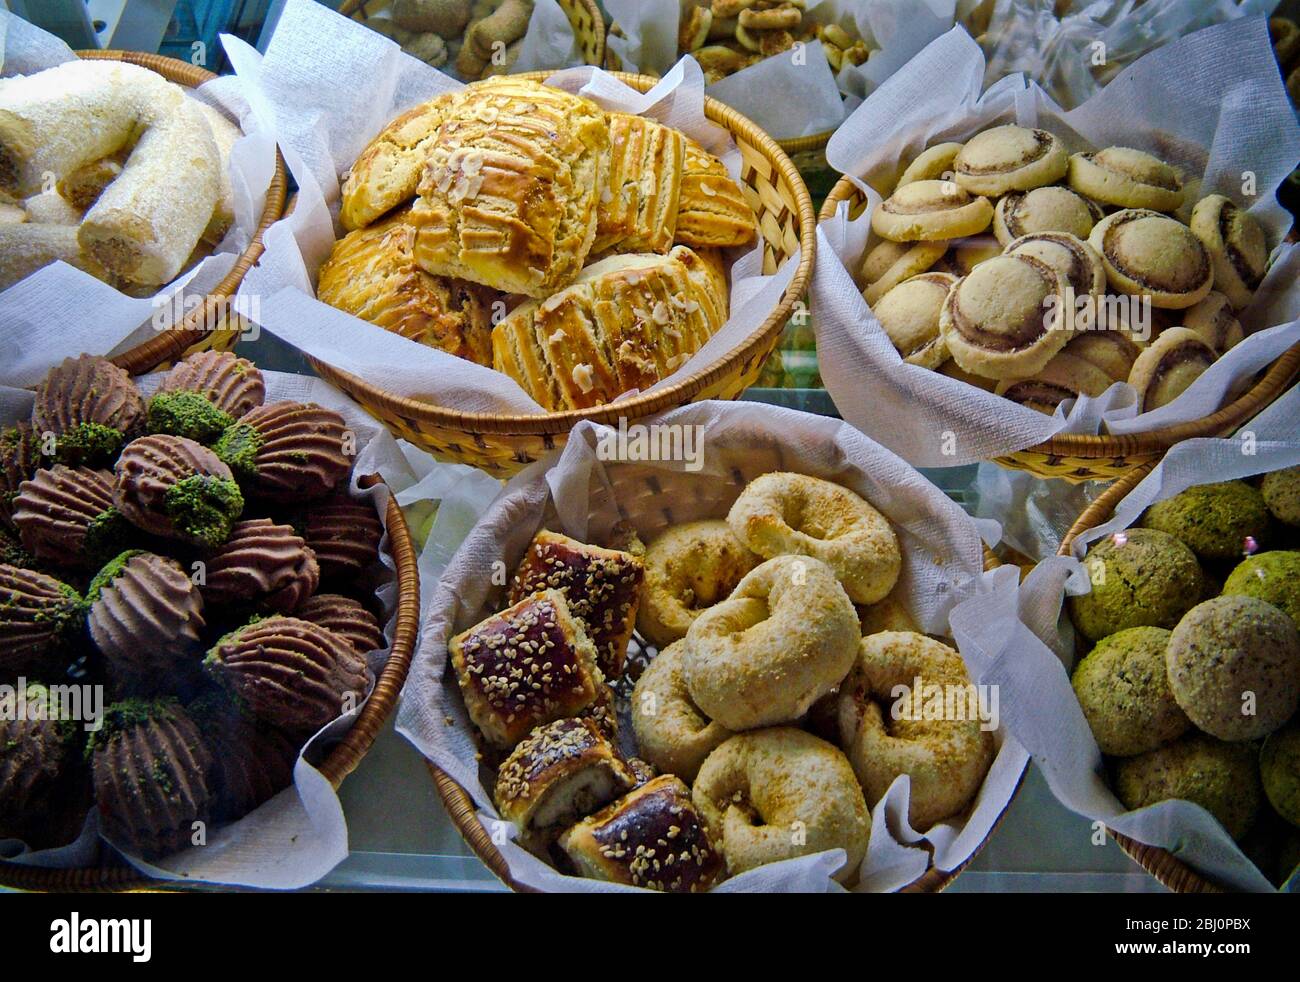 Auswahl an Kuchen, Plätzchen und Keksen in Vitrine der Patisserie Cafe in Resort Stadt Dalayan, anatolia, Türkei - Stockfoto